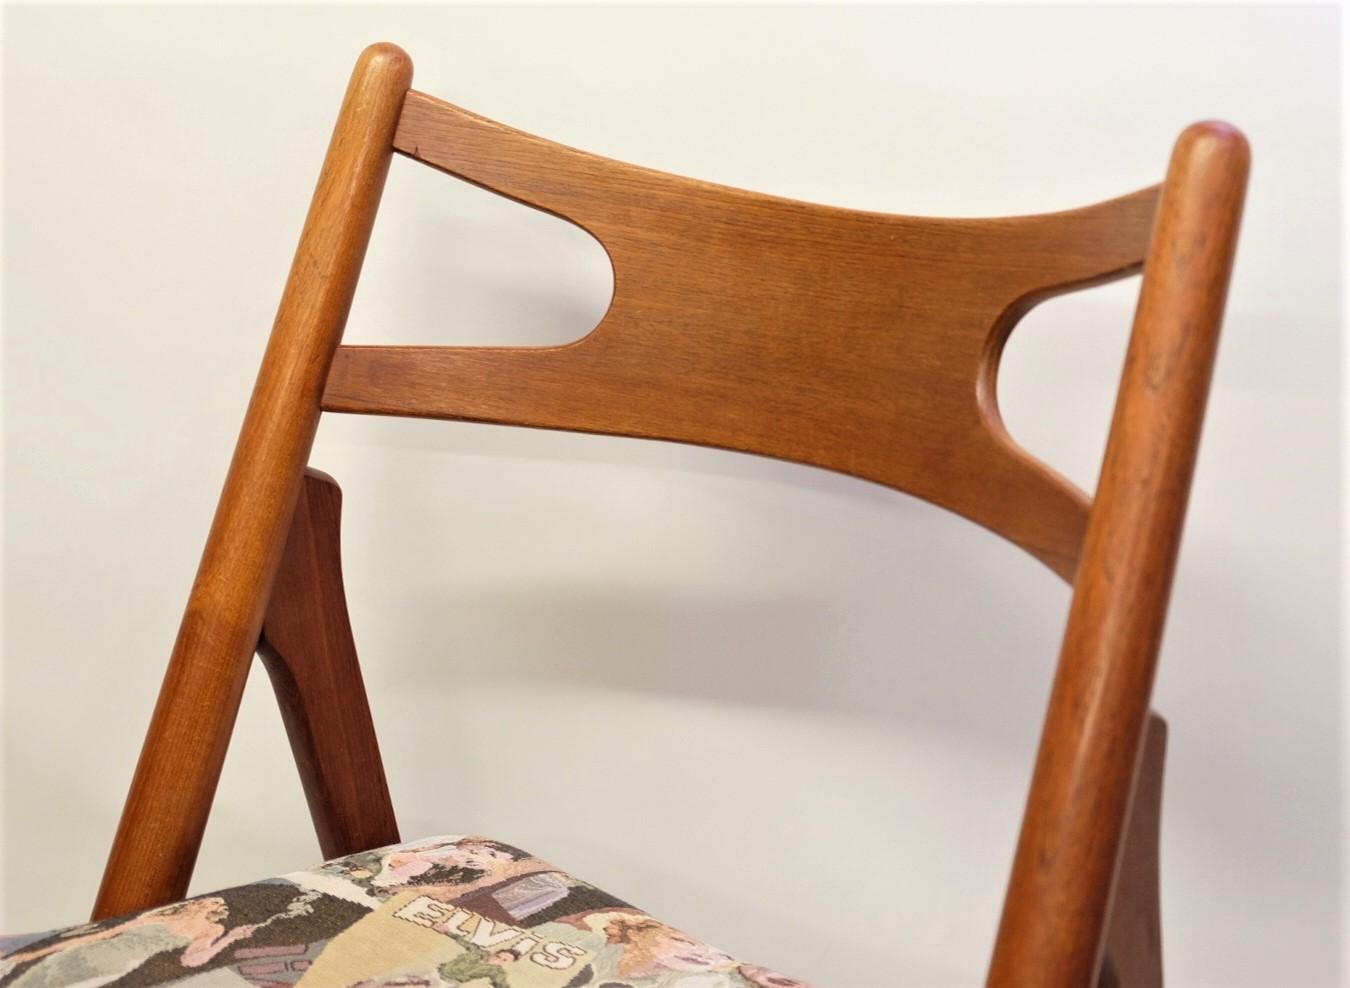 Hans J. Wegner Mid-Century Sawbuck Dining Chair CH29 Teak for Carl Hansen & Son For Sale 5